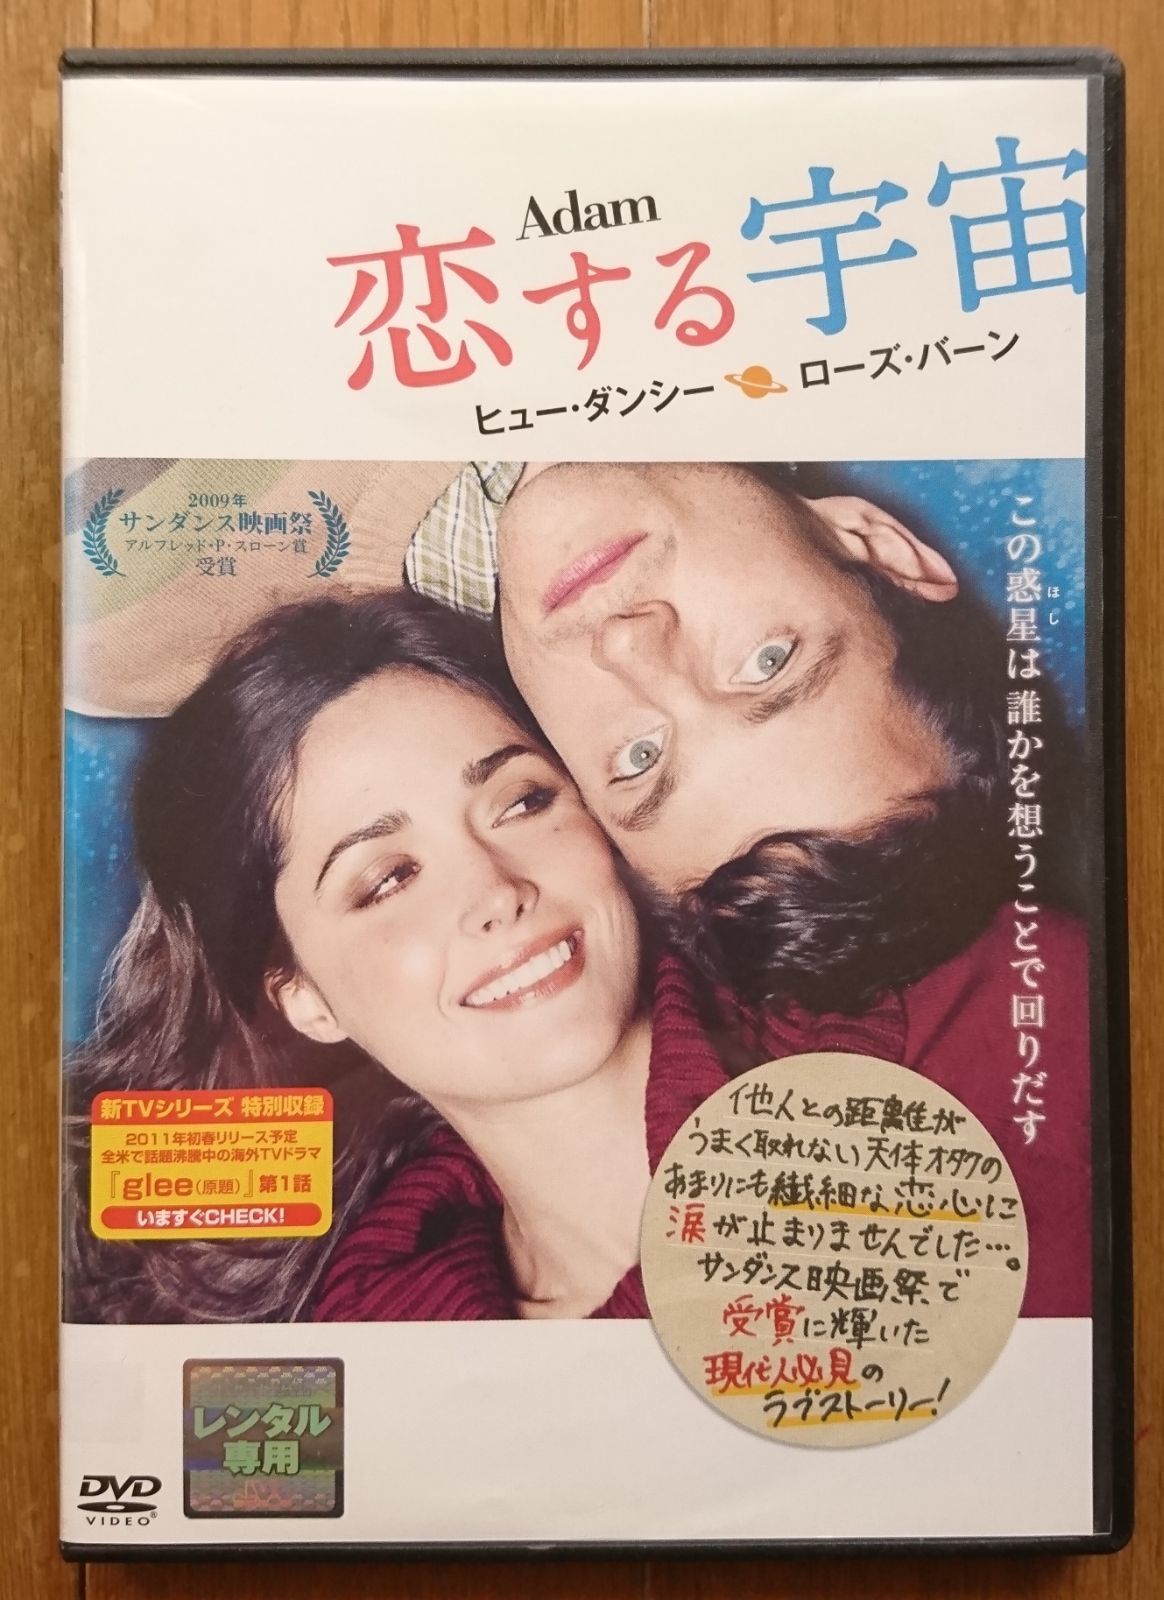 【レンタル版DVD】恋する宇宙 出演:ヒュー・ダンシー/ローズ・バーン